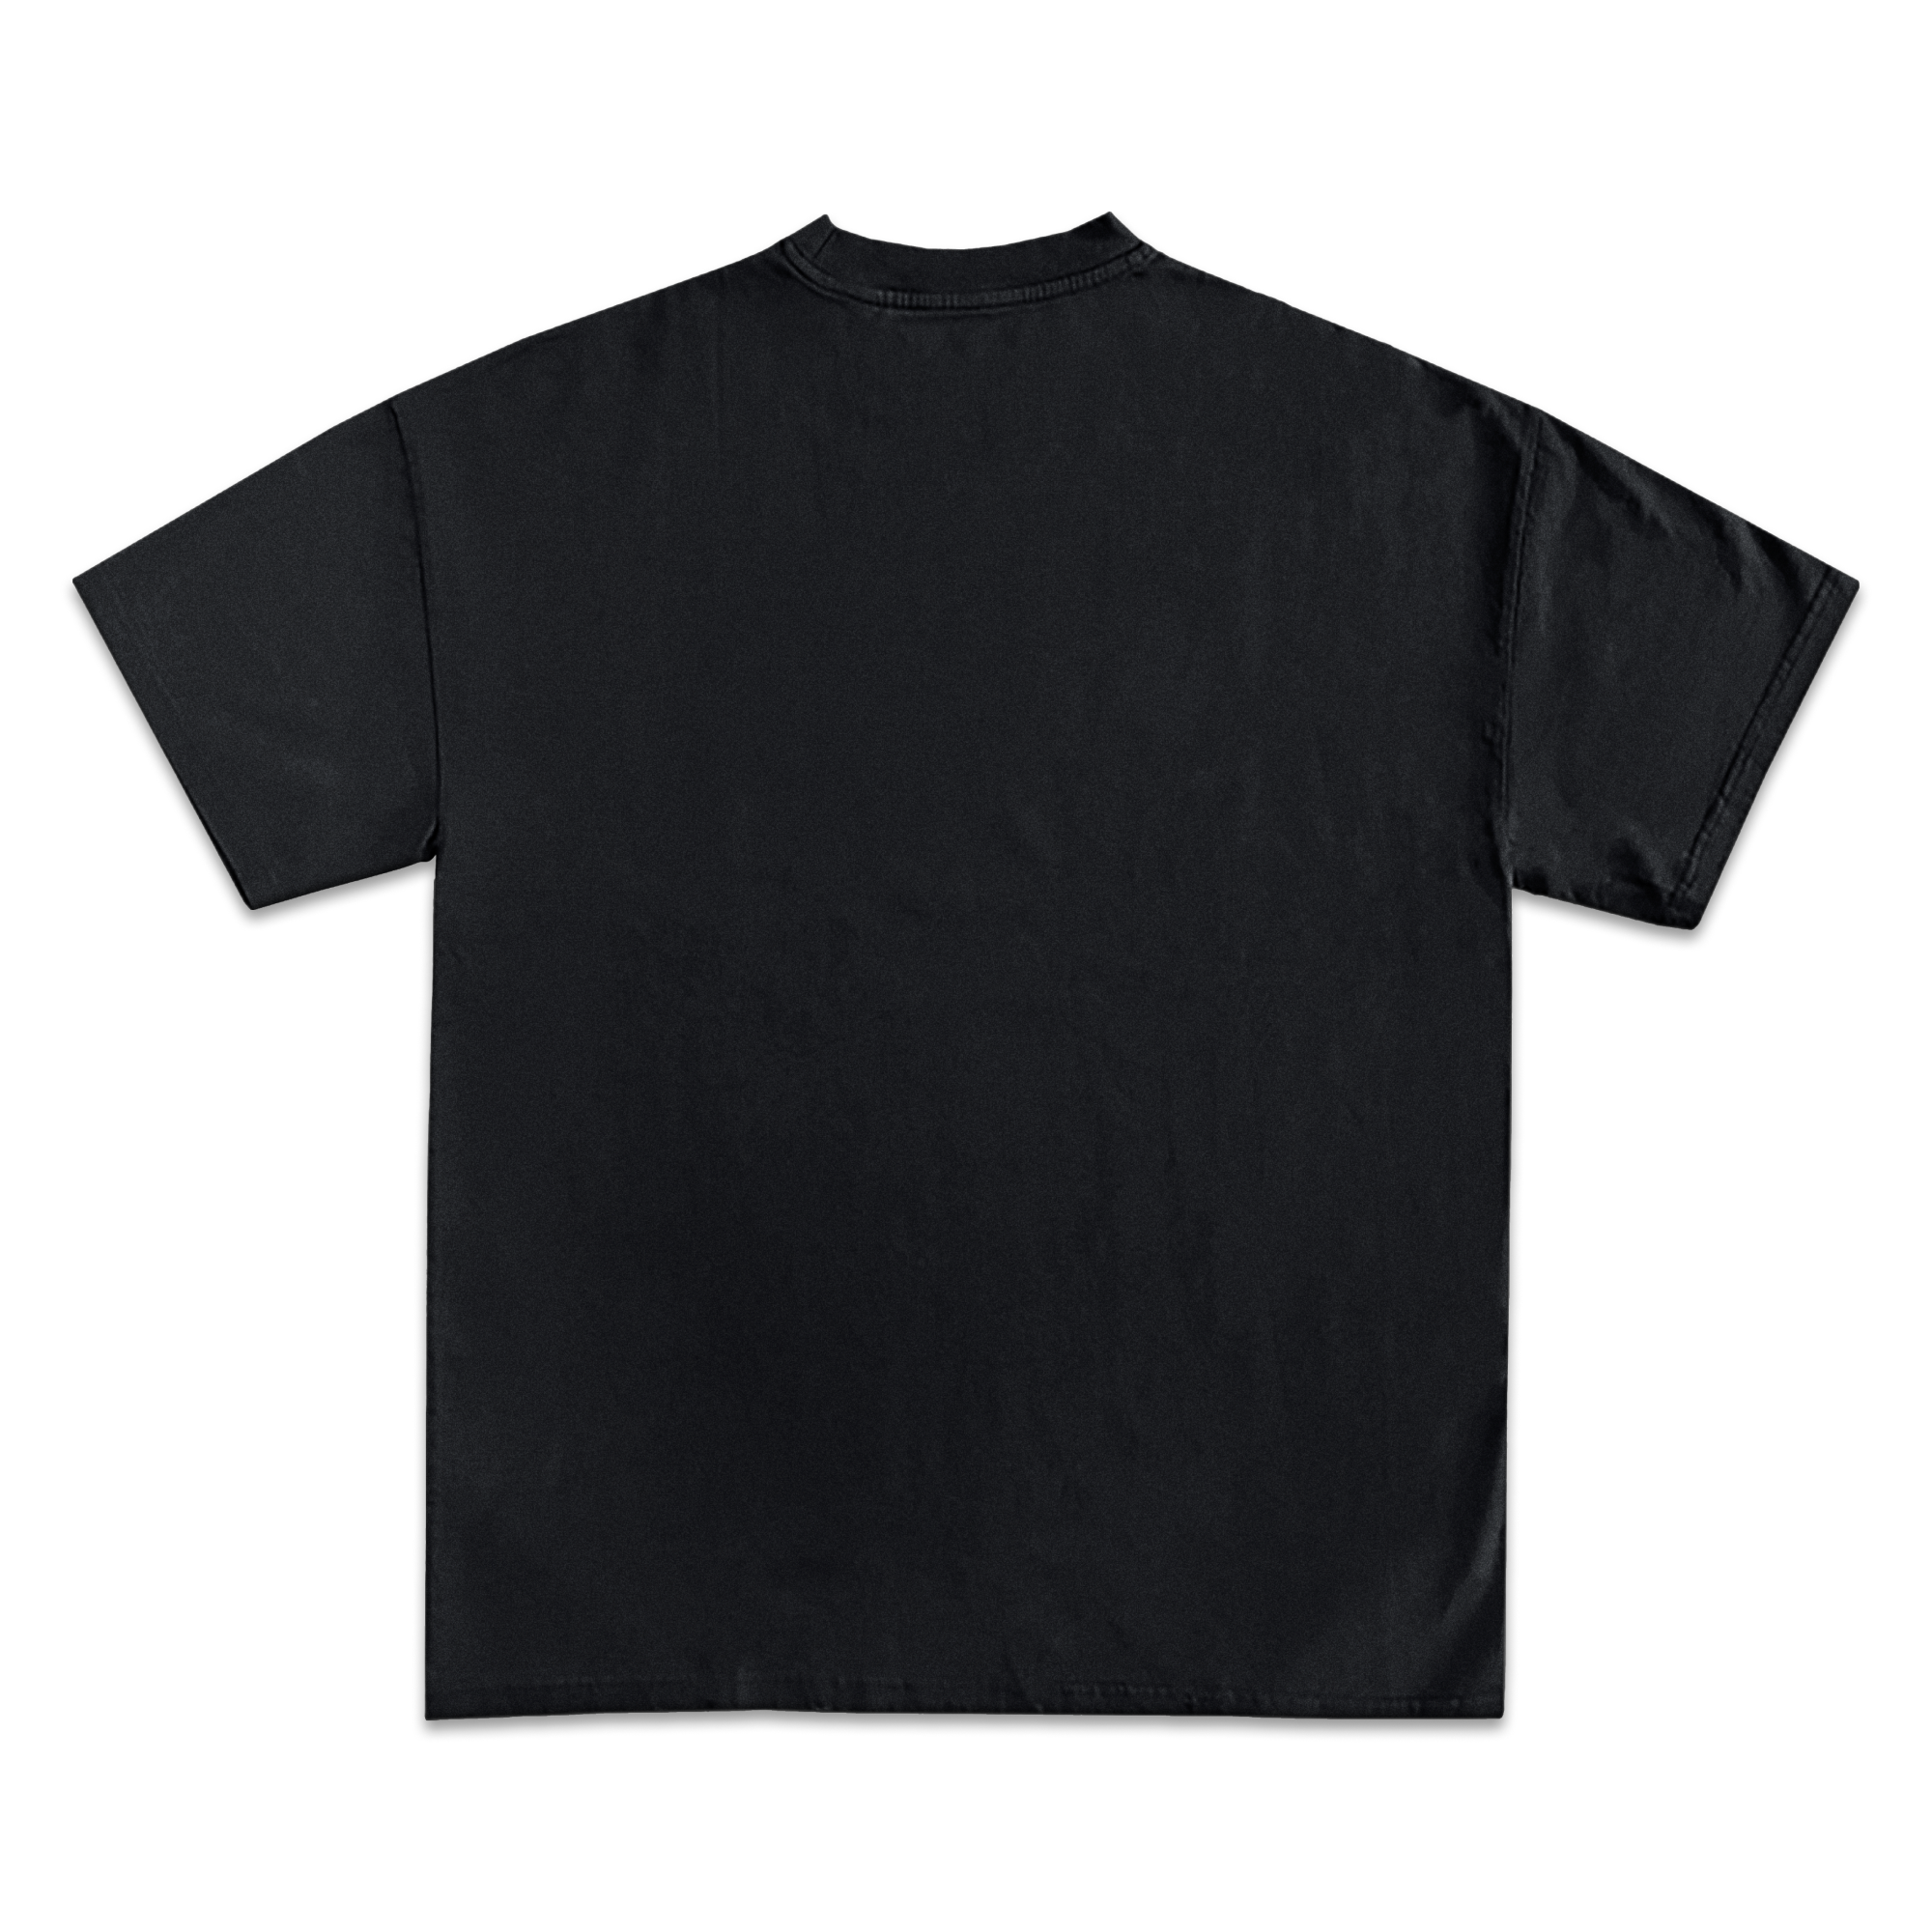 Future Hendrix Graphic T-Shirt